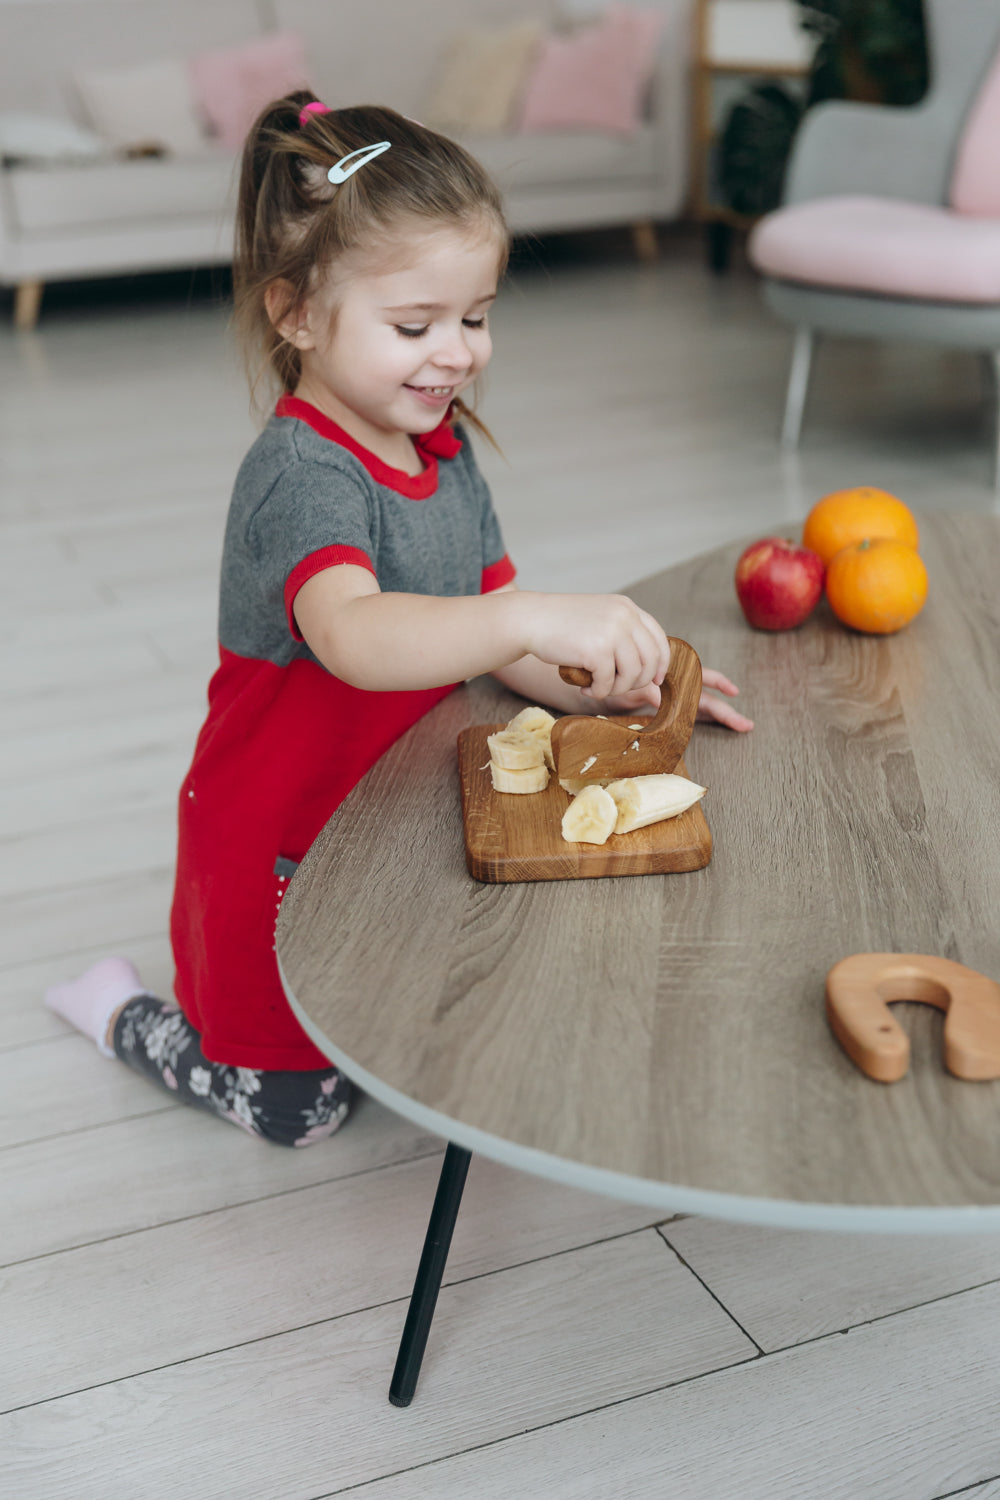 Safe Wooden Knife for Kids, Children's Utensil Montessori Knife, Toddl –  olivkawood